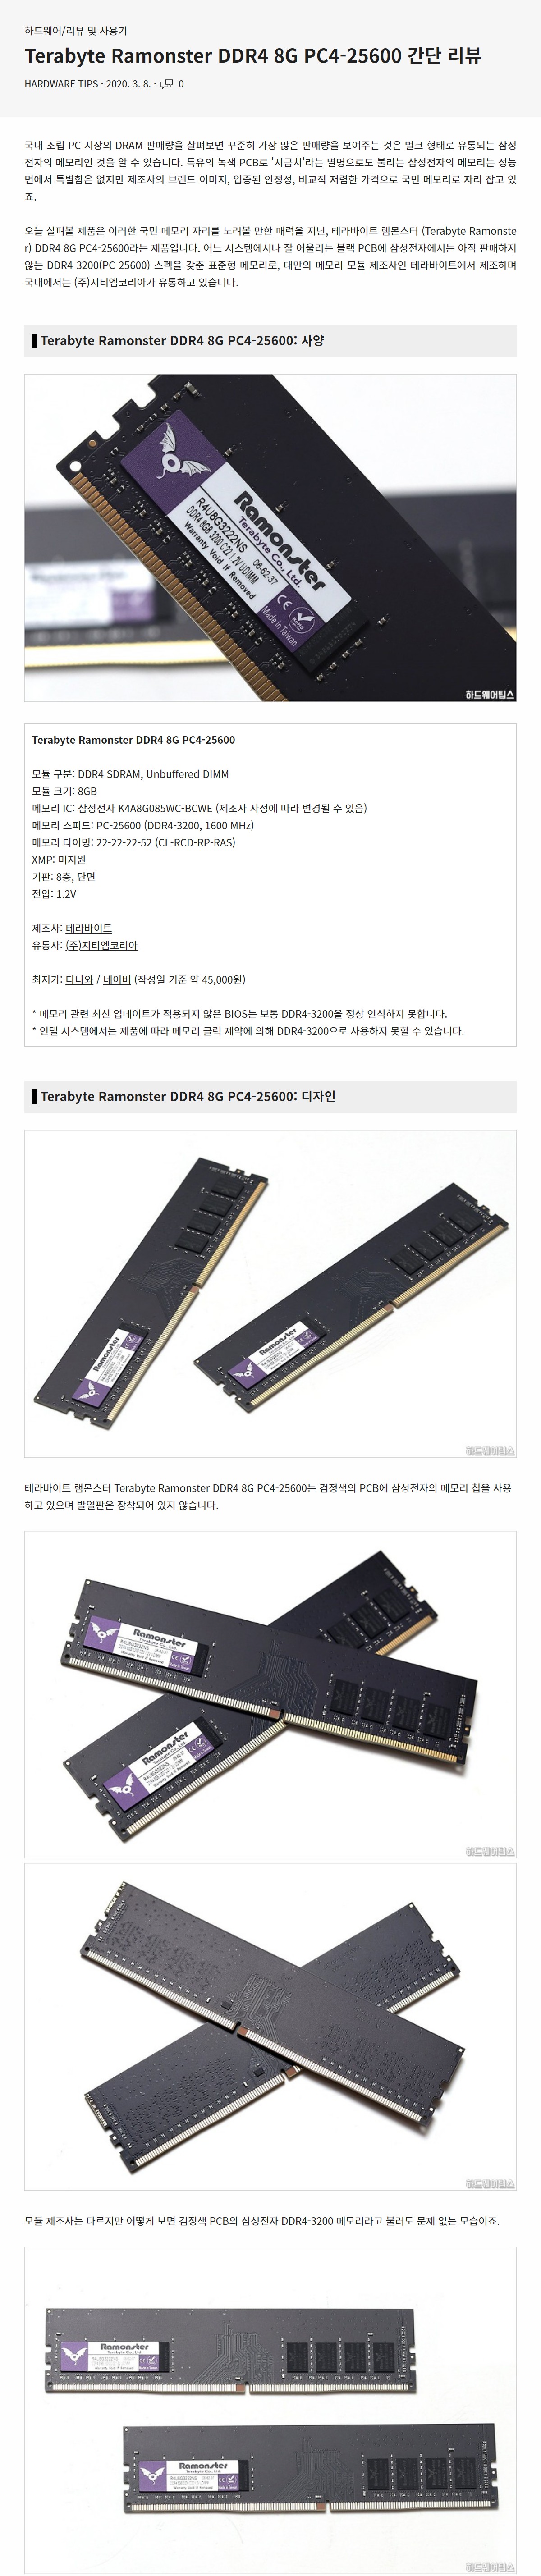 Terabyte Ramonster DDR4 8G PC4-25600 1.jpg